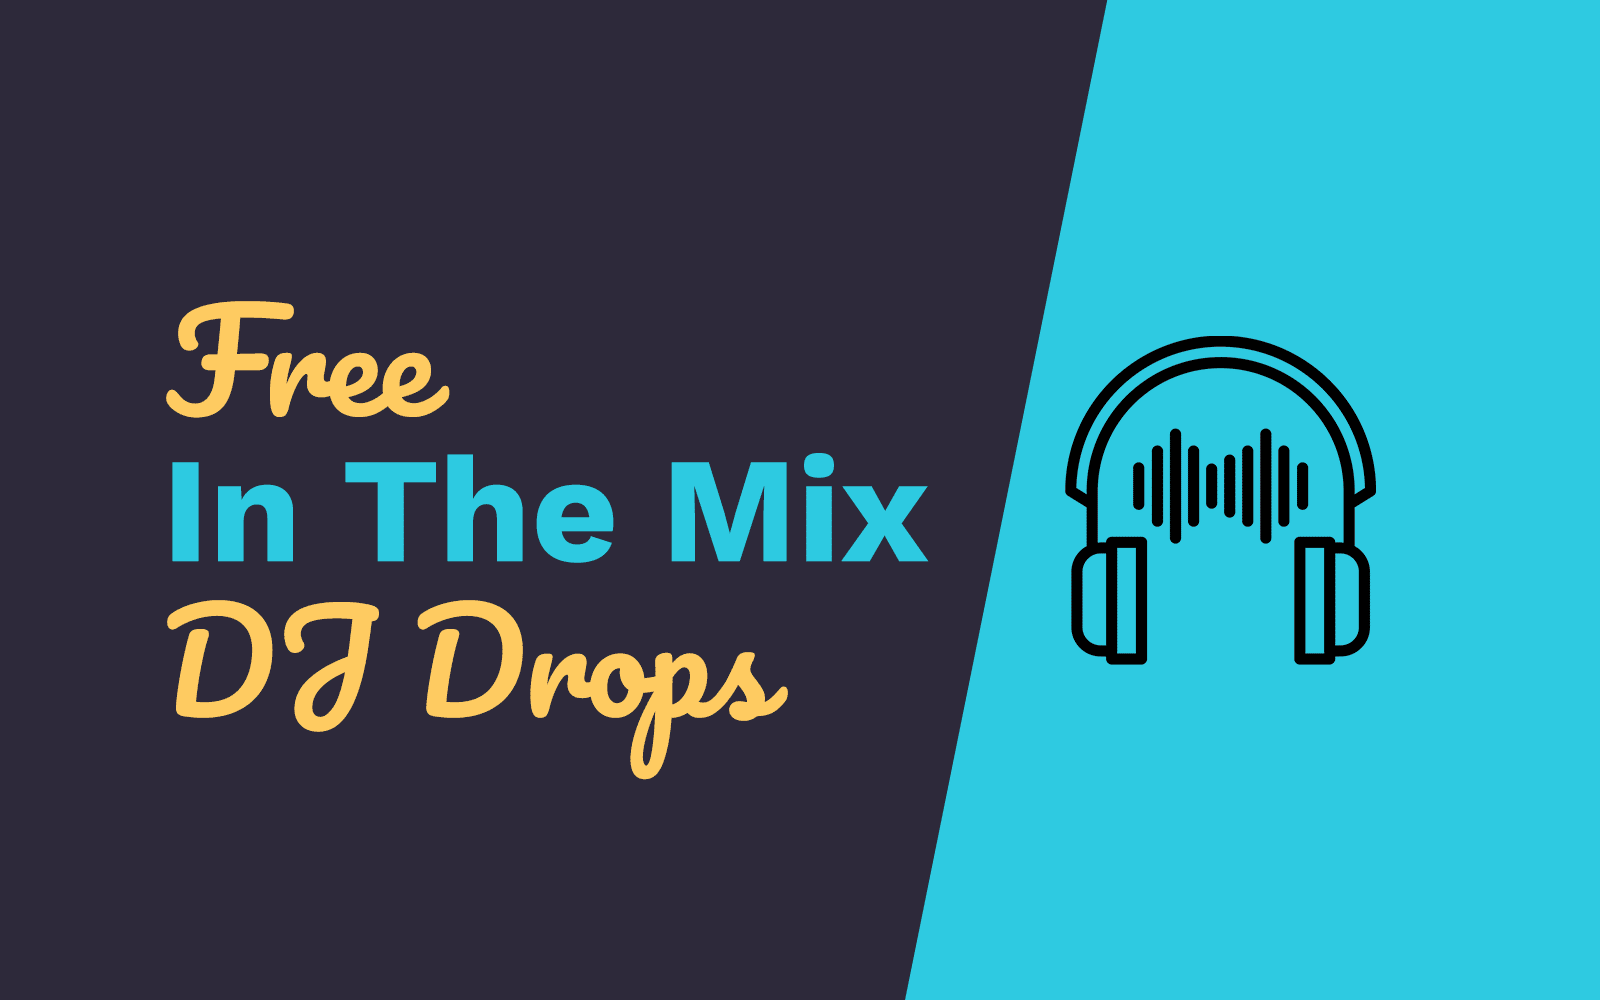 dj drops free mp3 download